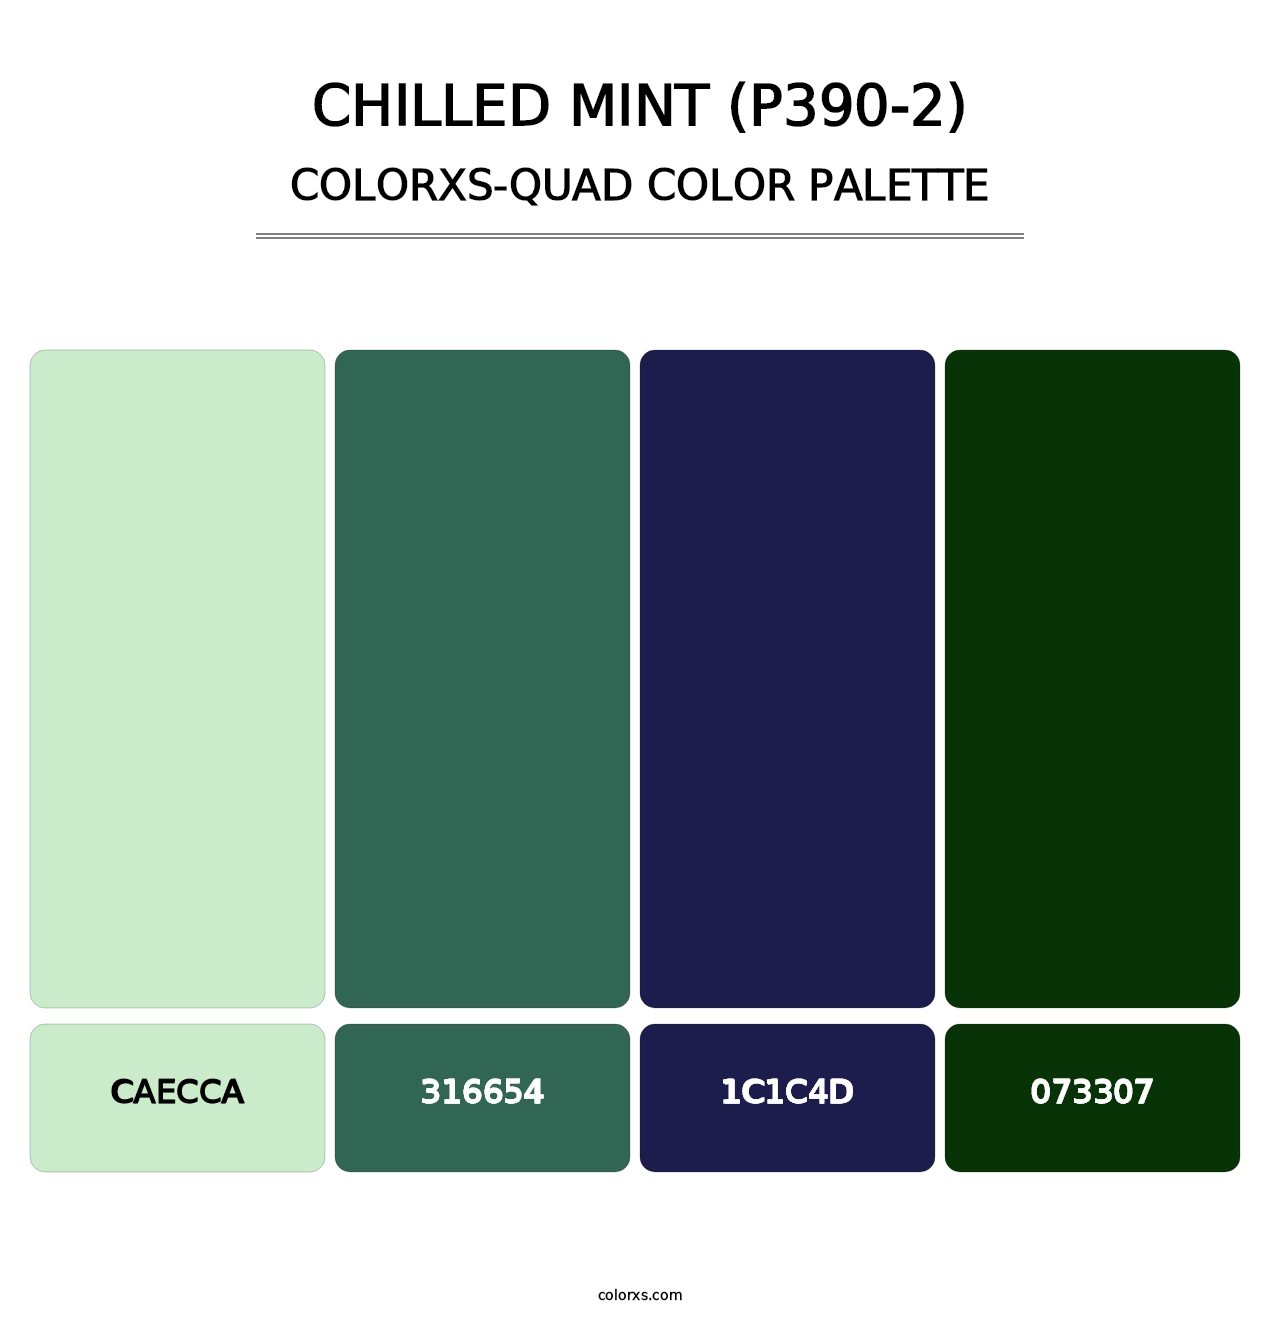 Chilled Mint (P390-2) - Colorxs Quad Palette